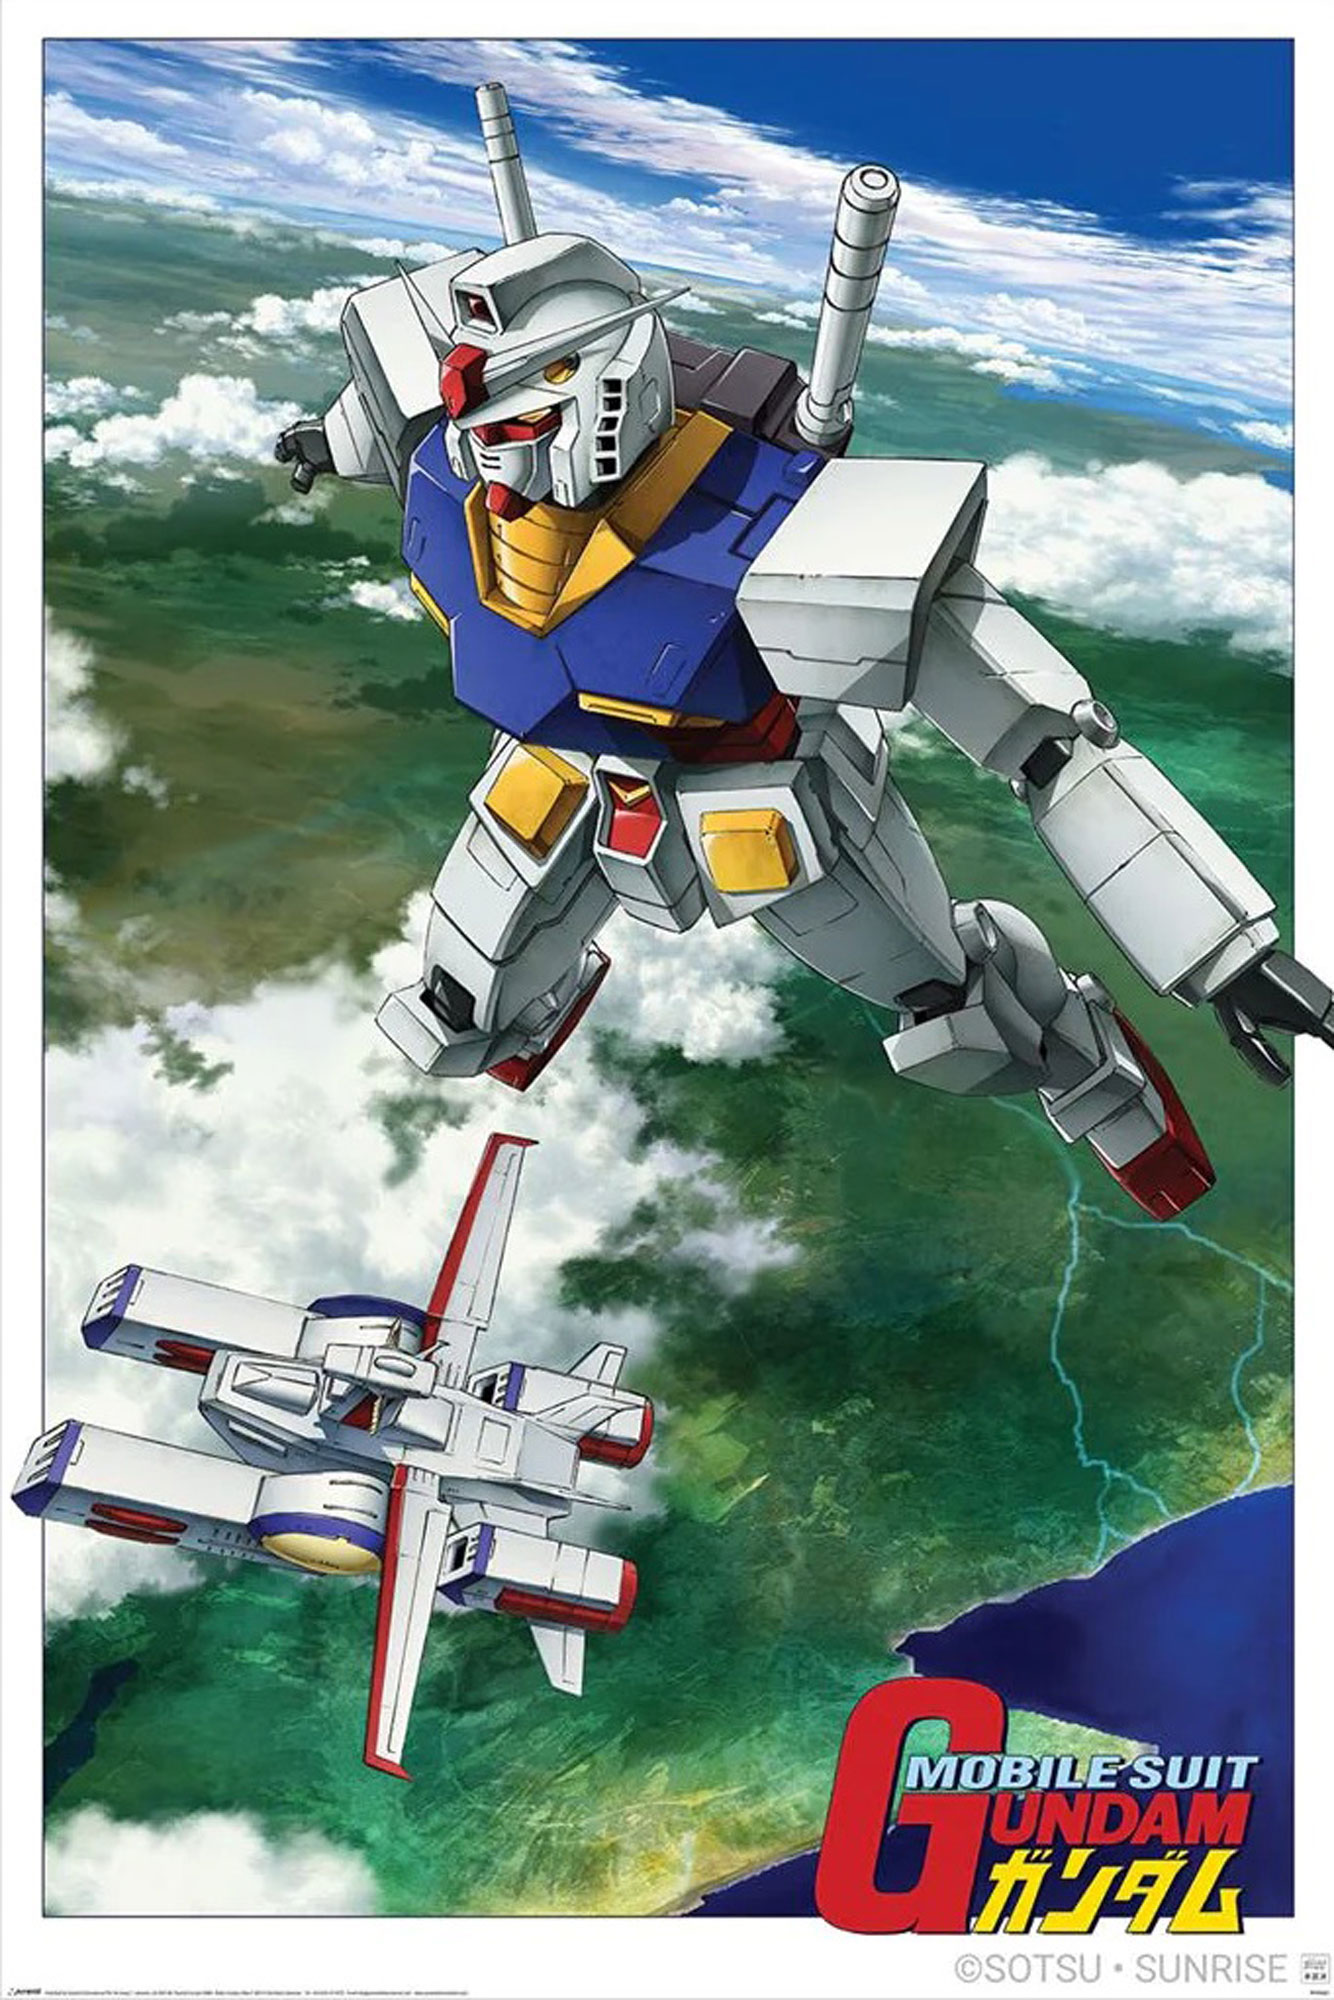 Flight Mobile Gundam Suit -